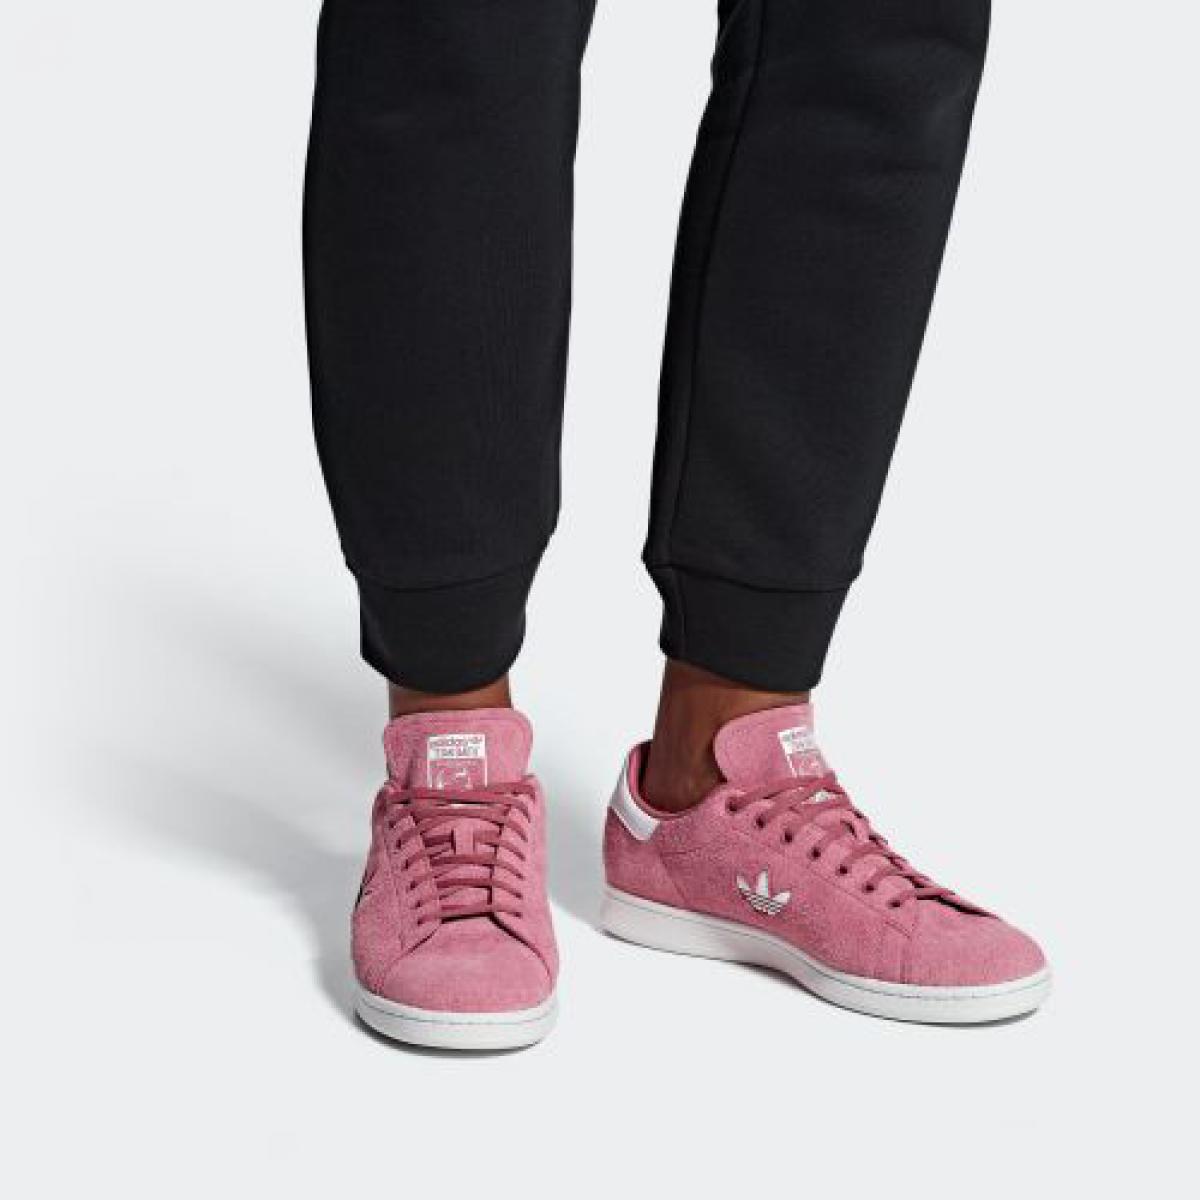 adidas Stan Smith (Women's) Pink Suede B37895 | LTD Sneakers \u0026 Wear